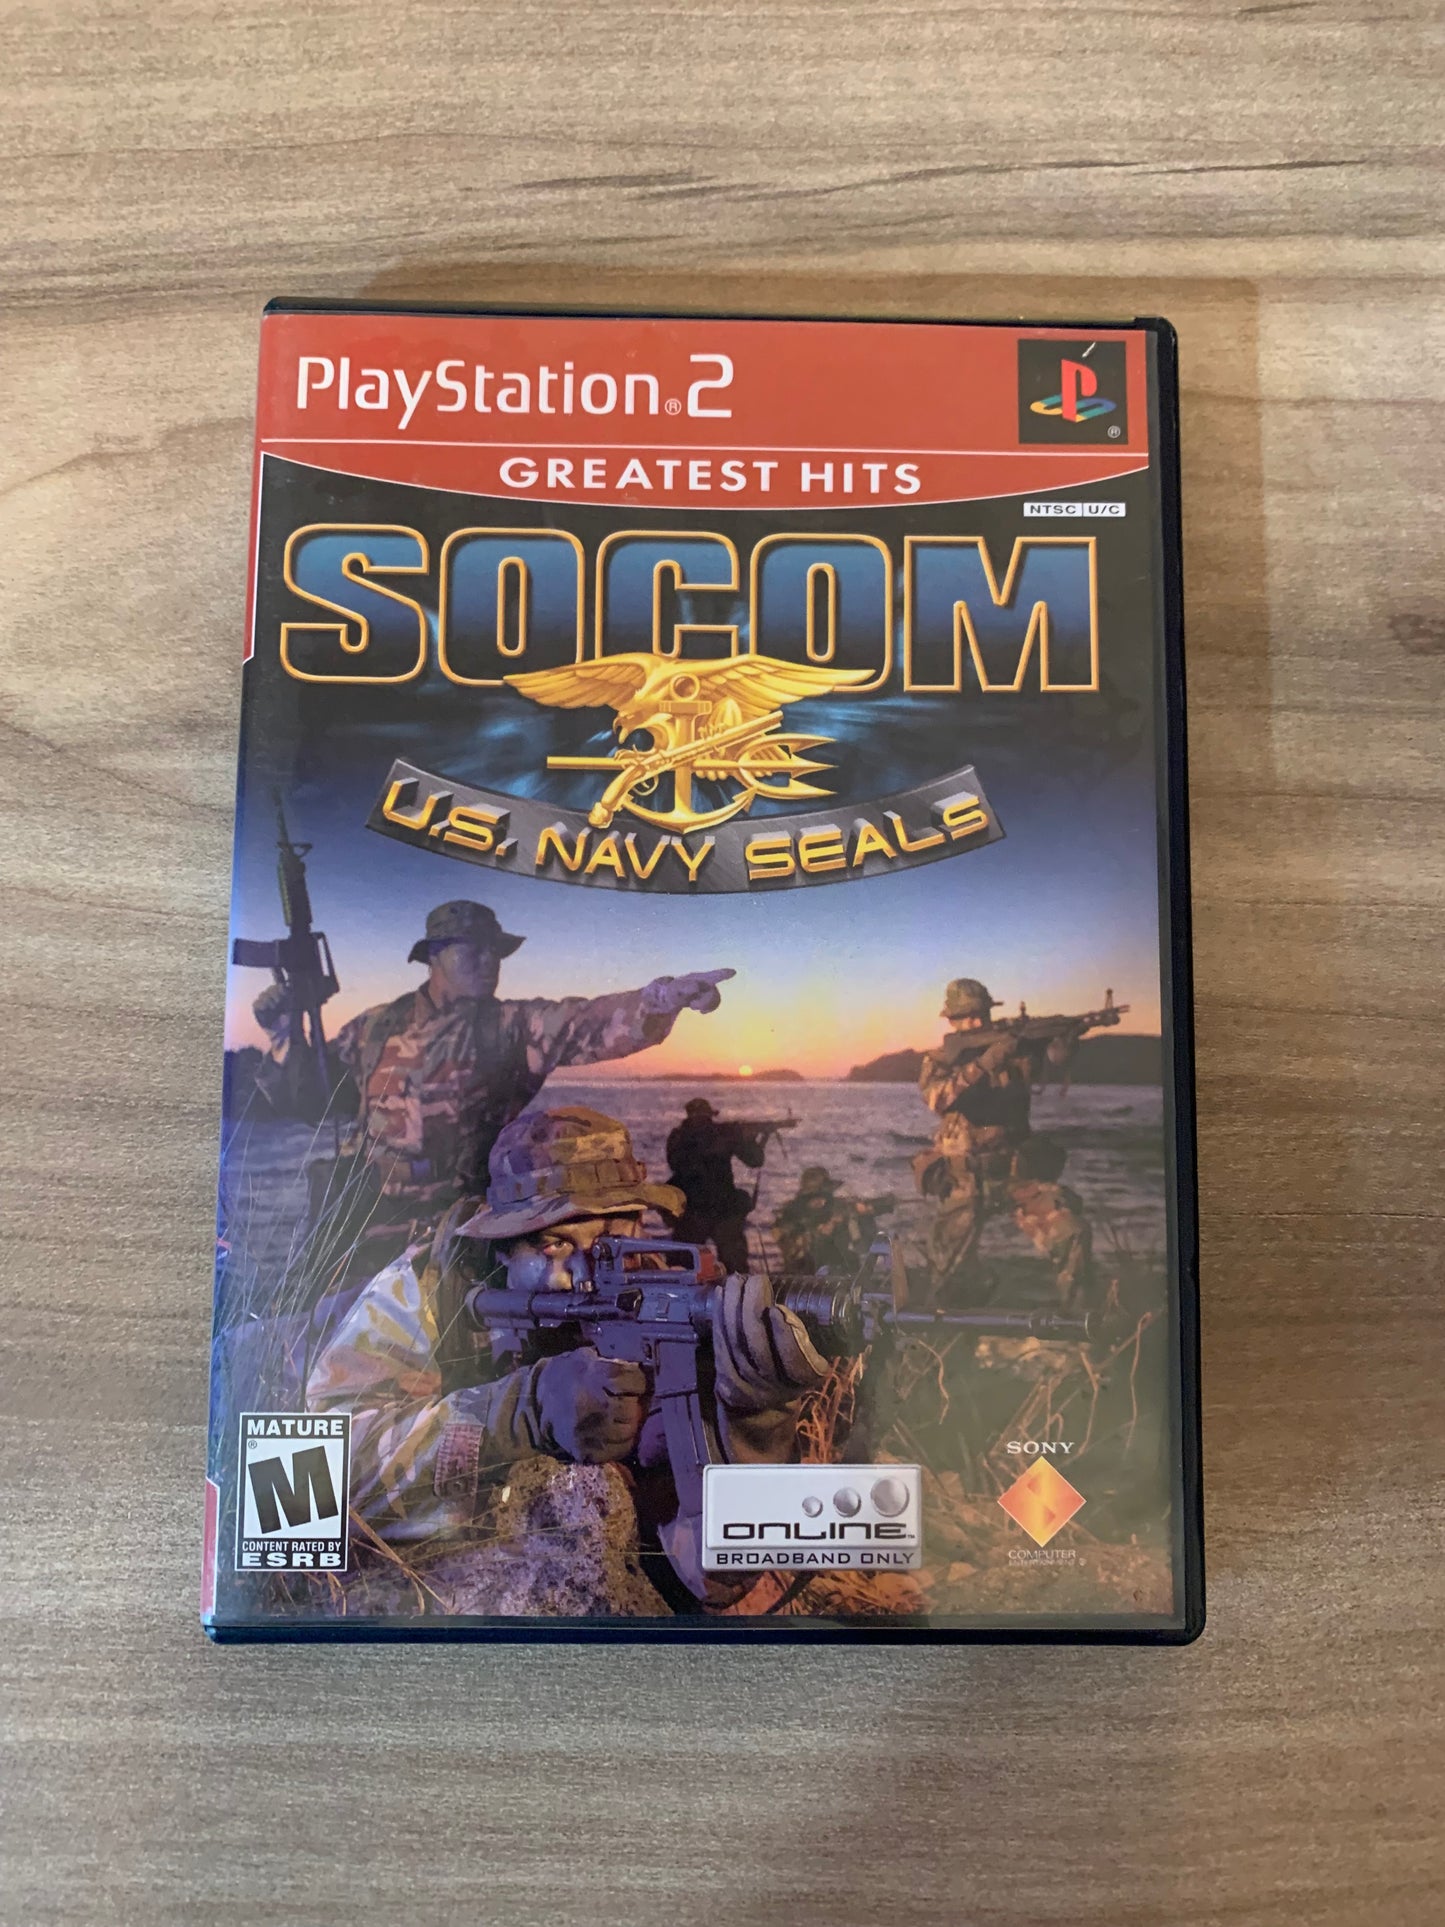 SONY PLAYSTATiON 2 [PS2] | SOCOM U.S. NAVY SEALS | GREATEST HiTS